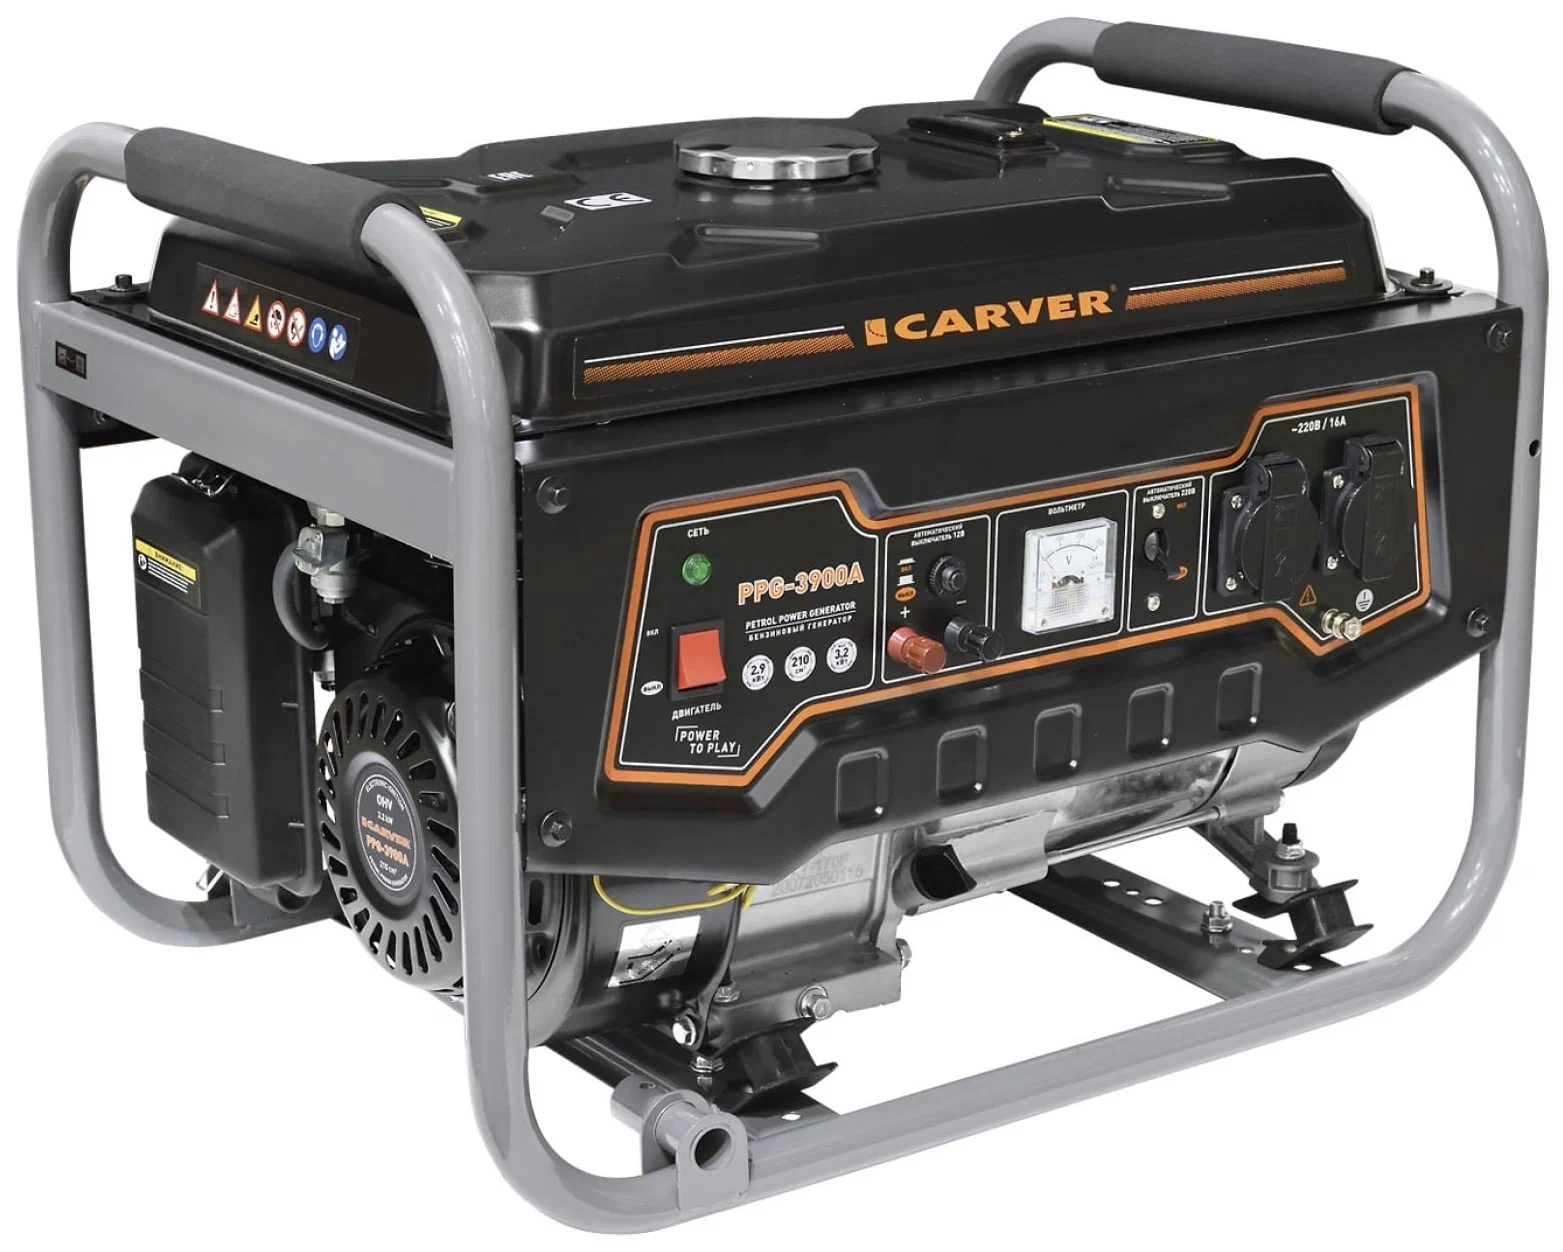 Carver PPG-3900A, (3200 Вт) - максимальная мощность: 3200 Вт